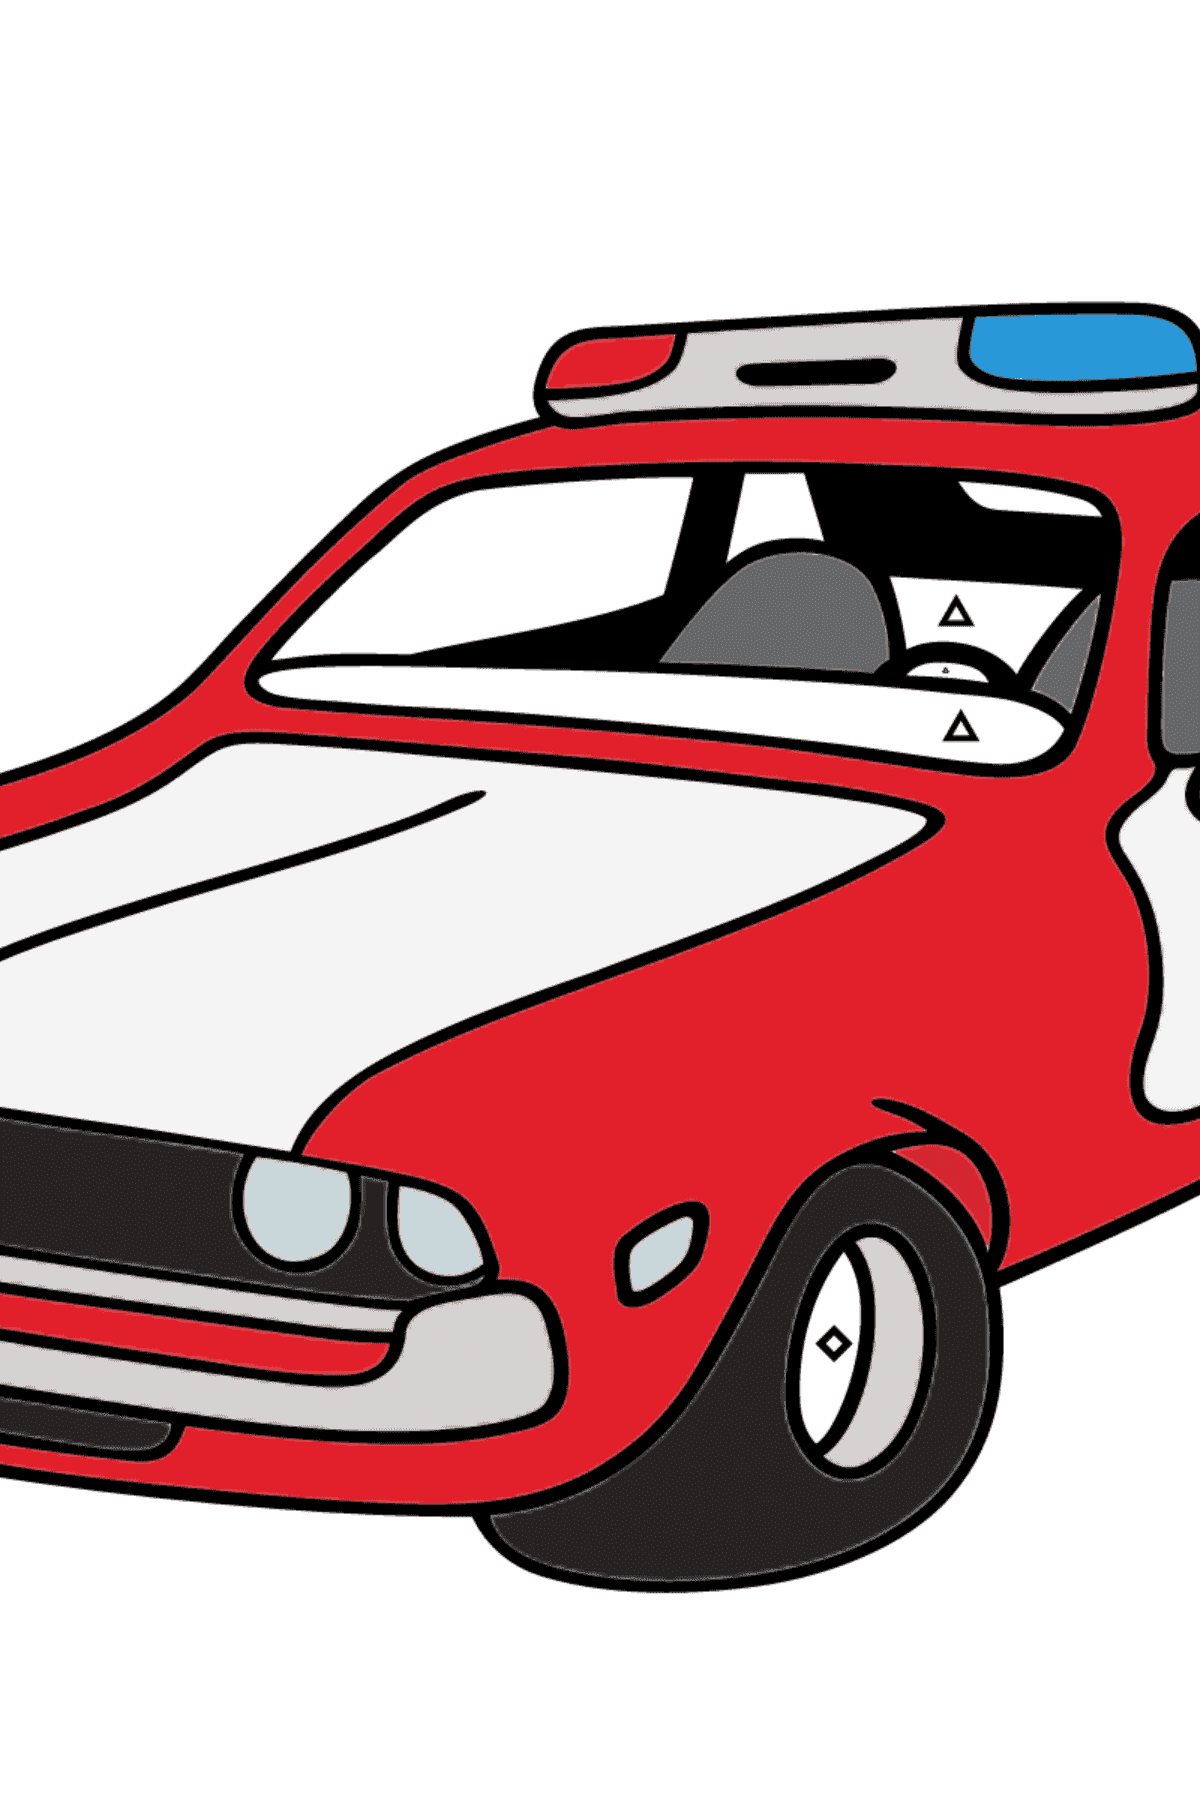 Dibujo para Colorear - Una Patrulla de Policía Roja con Blanca - Colorear por Símbolos para Niños